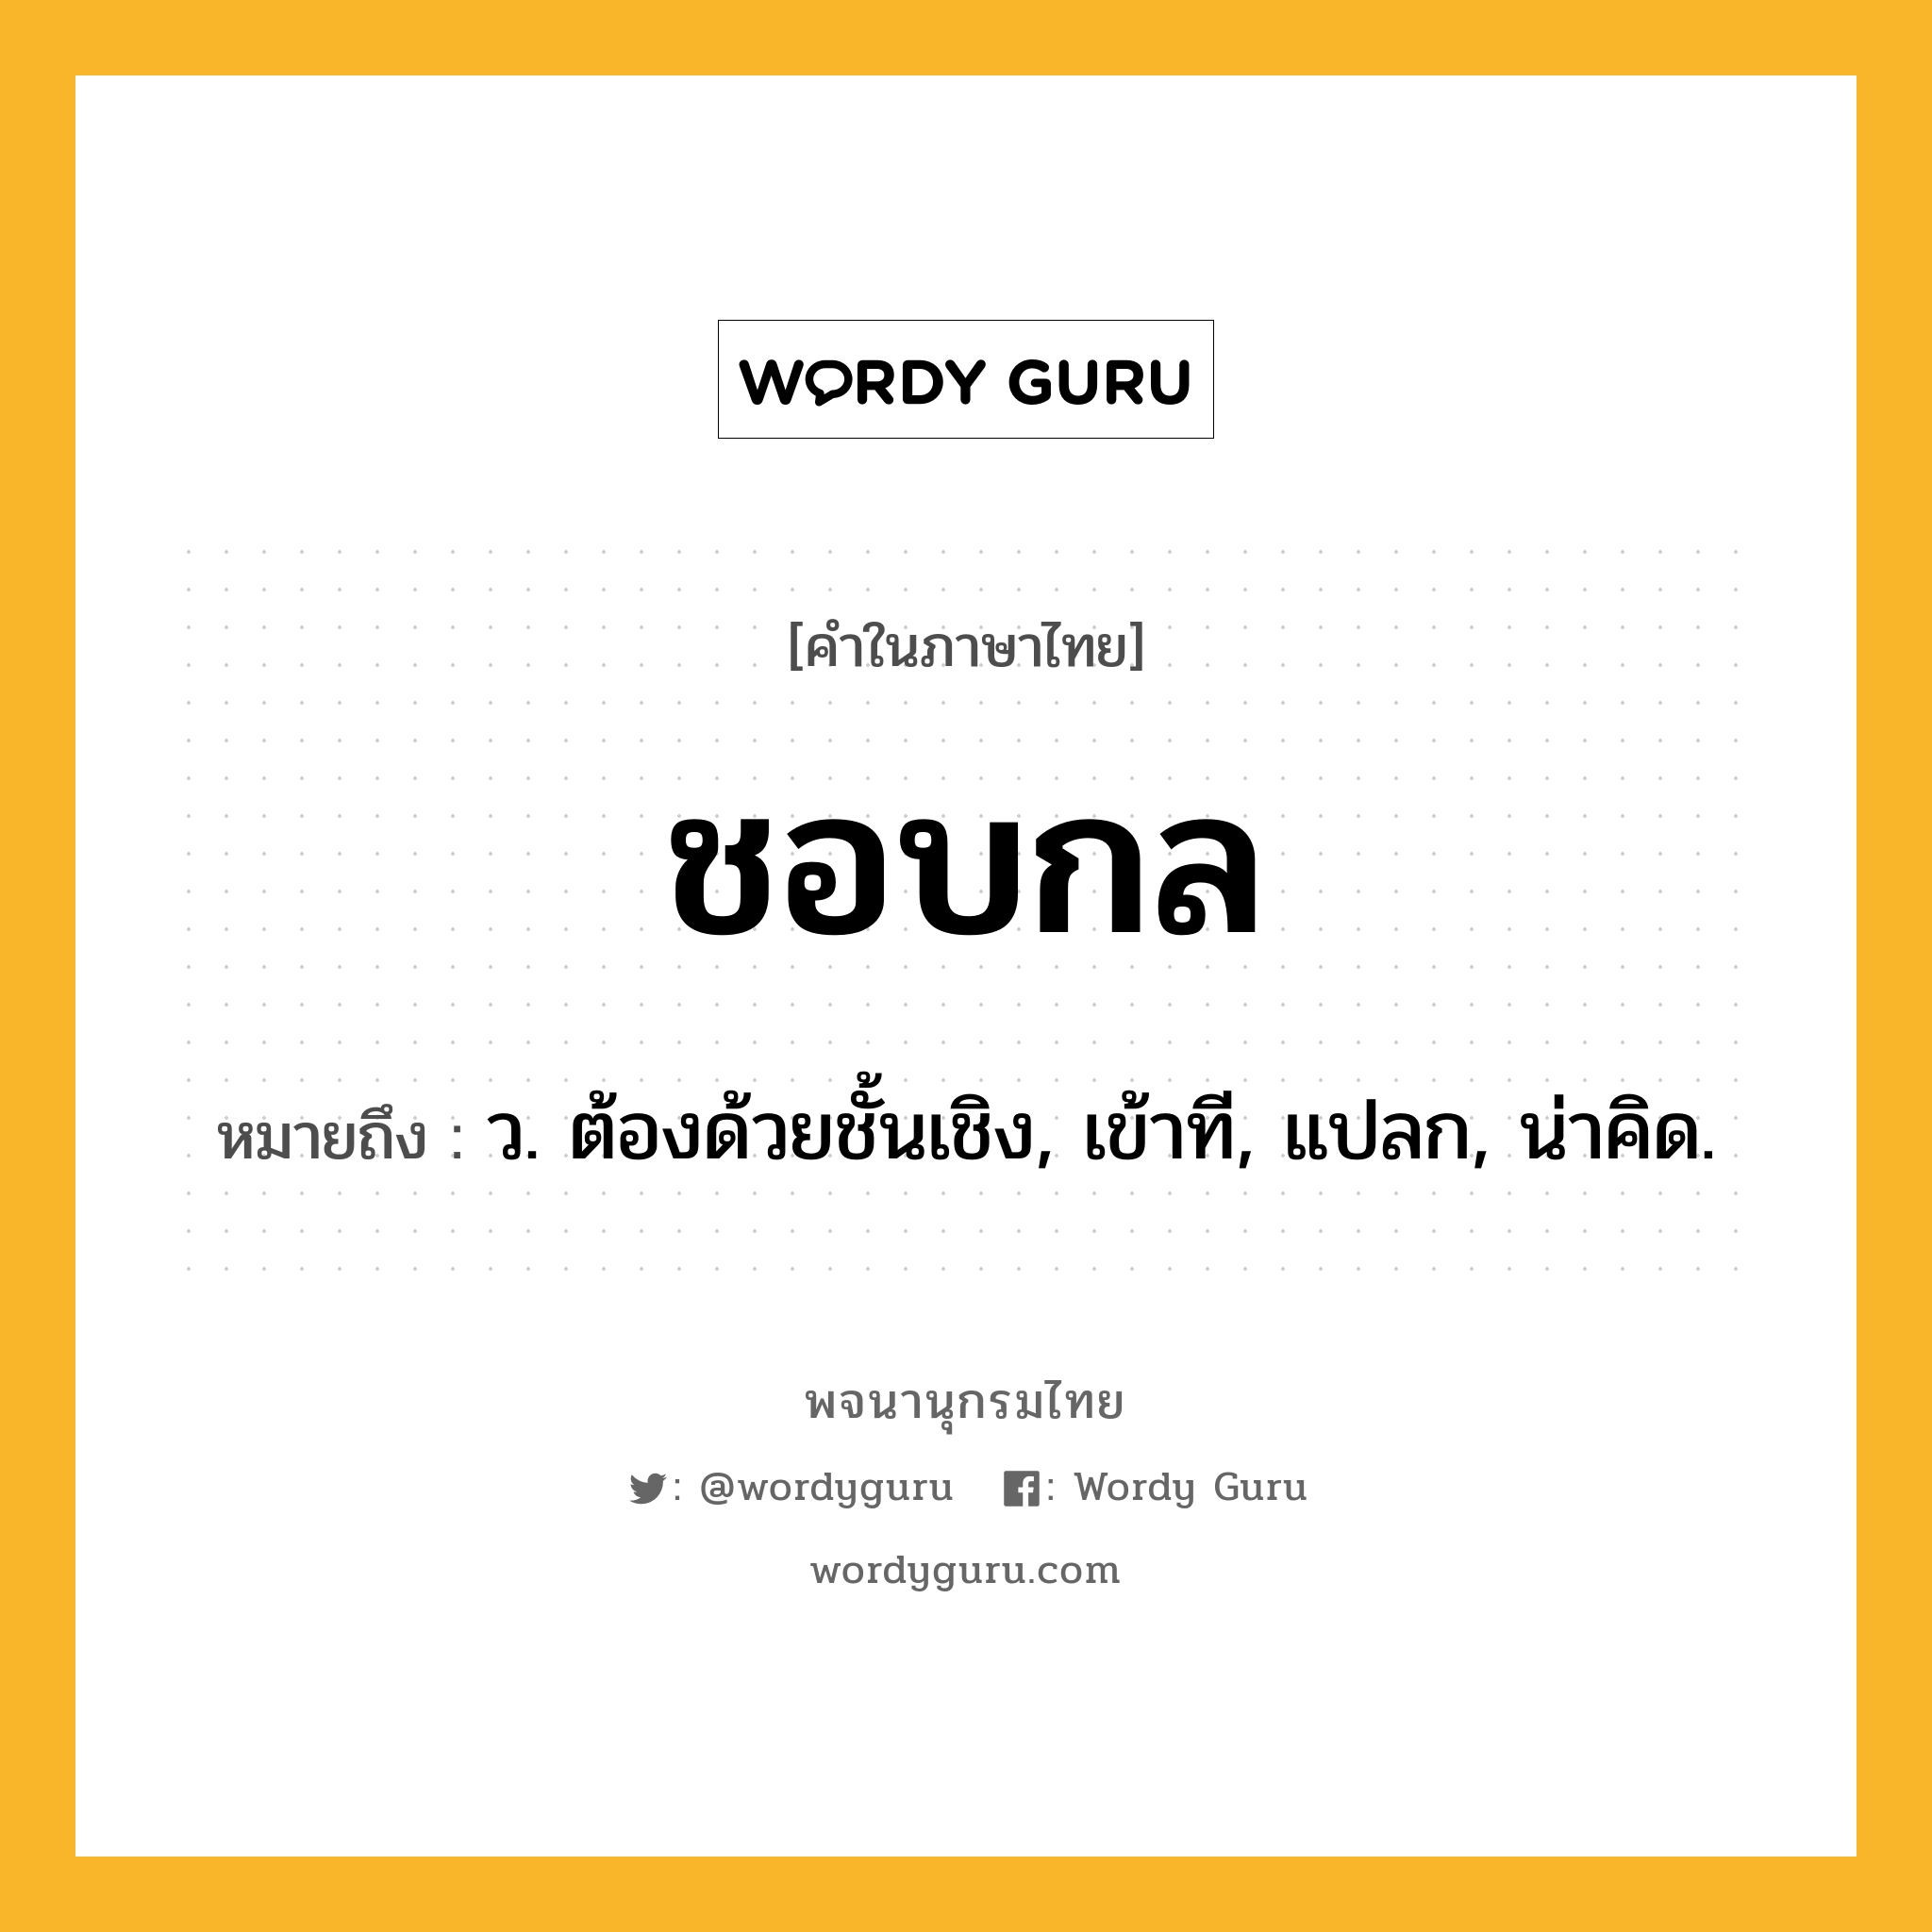 ชอบกล ความหมาย หมายถึงอะไร?, คำในภาษาไทย ชอบกล หมายถึง ว. ต้องด้วยชั้นเชิง, เข้าที, แปลก, น่าคิด.